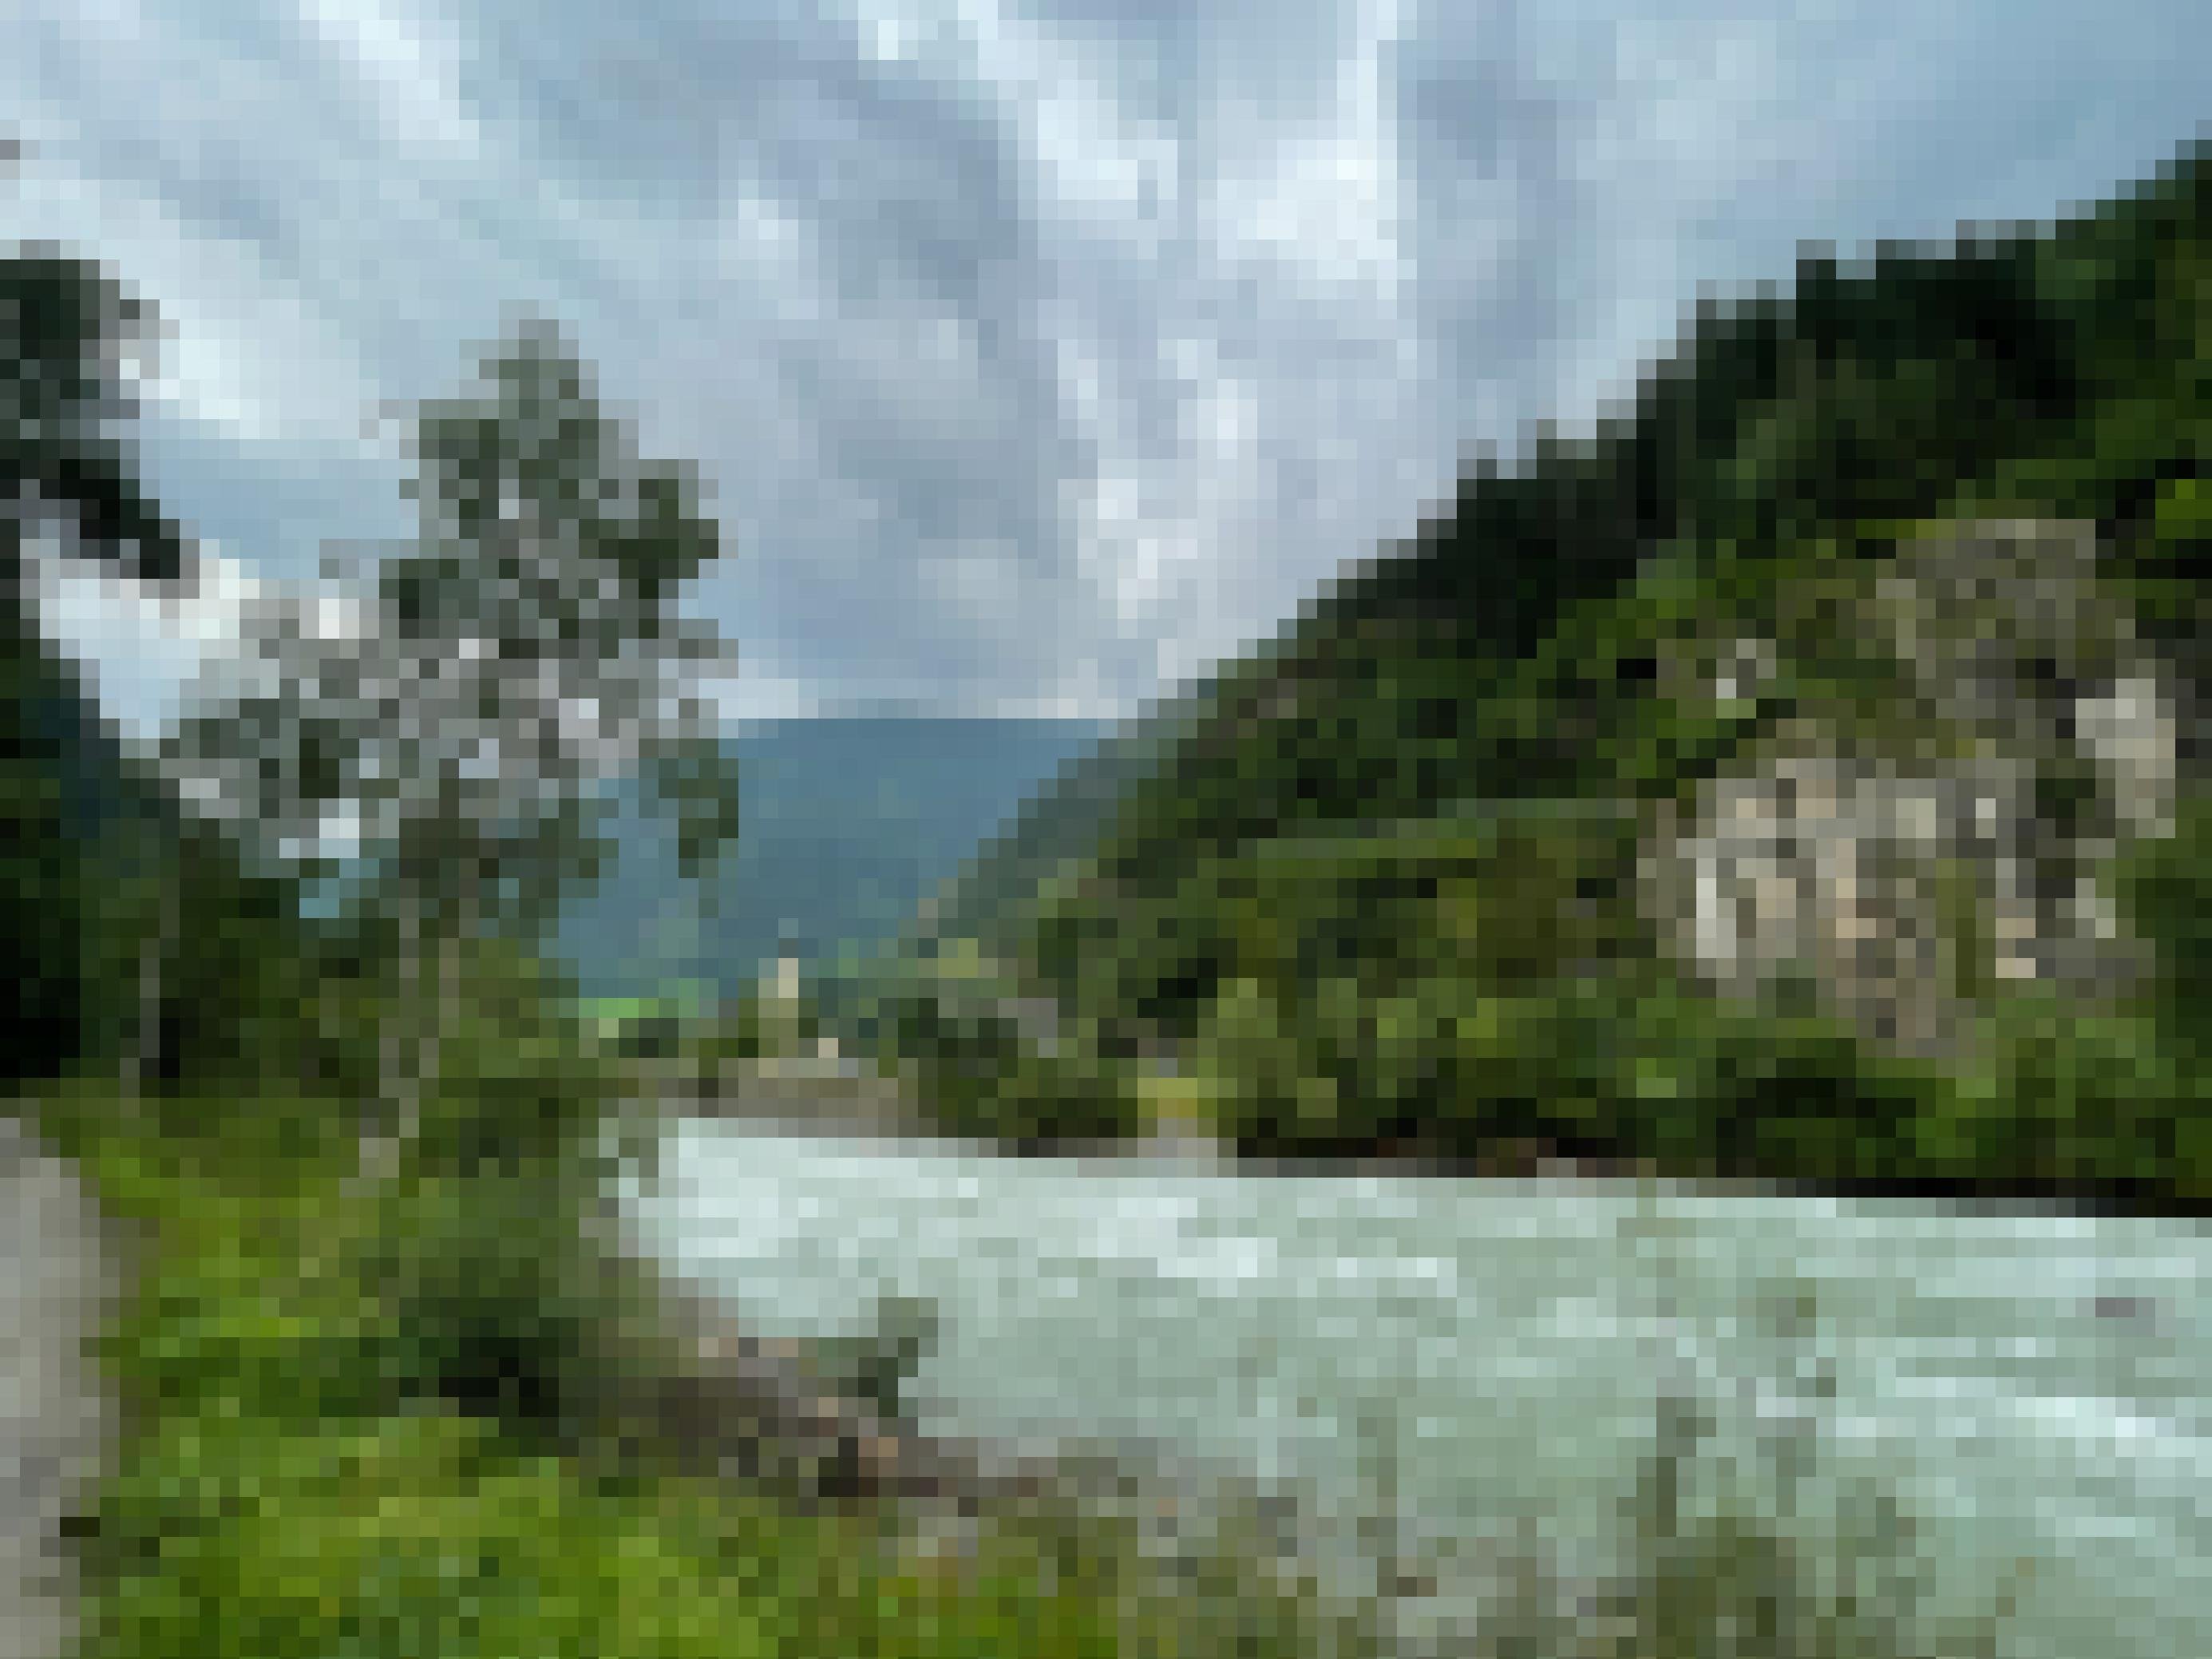 Landschaft mit türkisfarbenem Fluss und grünen Wäldern und Wiesen, Kirchturm.